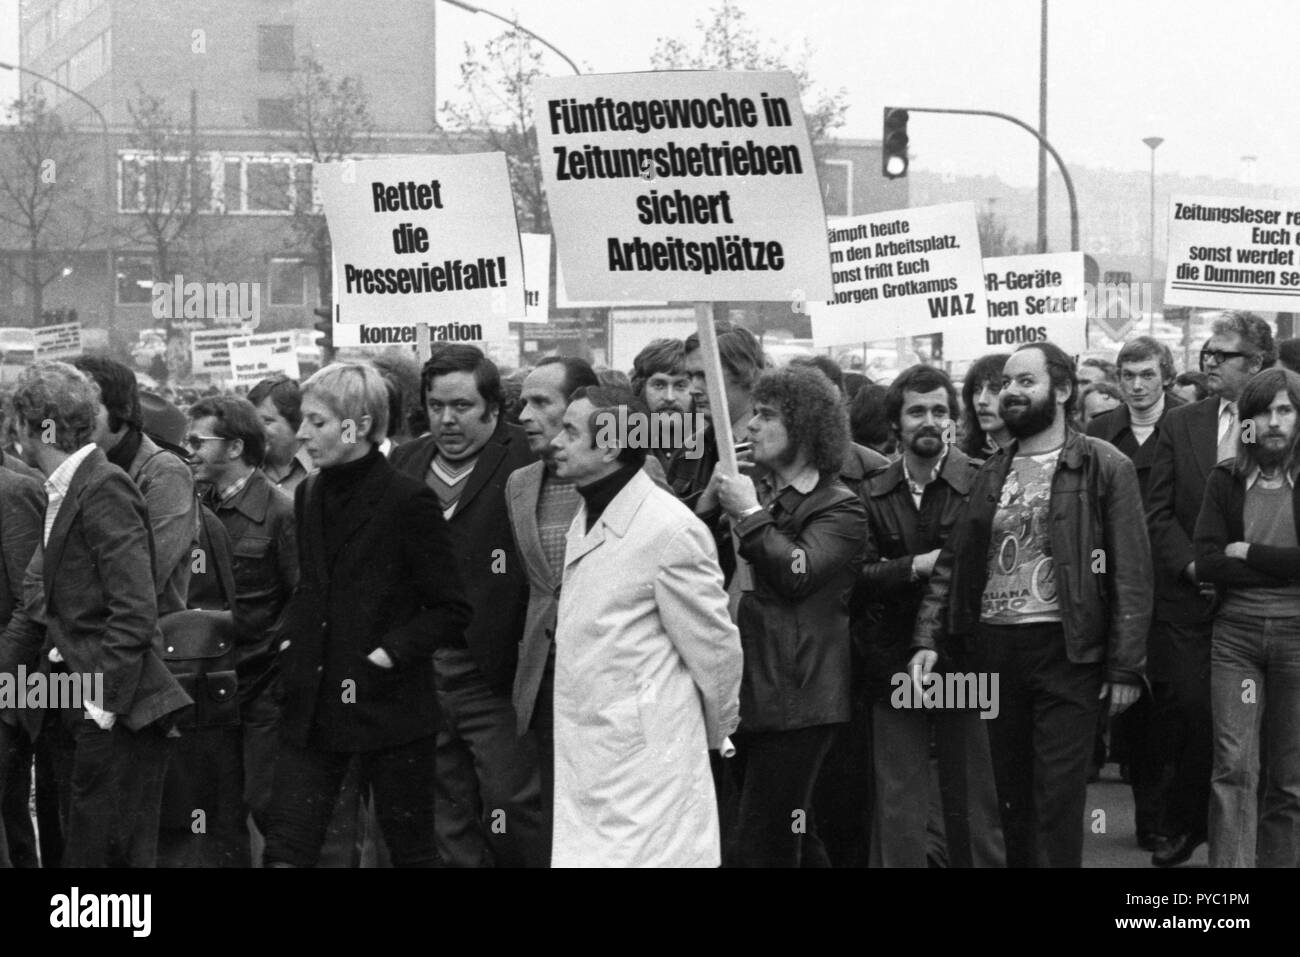 Plusieurs centaines de journalistes et employés de la WAZ journaux (Westdeutsche Allgemeine Zeitung) et NRZ (Neue Ruhr-Zeitung) sont descendus dans la rue à Essen le 27 octobre 1975 par souci de leur emploi et la liberté de presse. Dans le monde d'utilisation | Banque D'Images